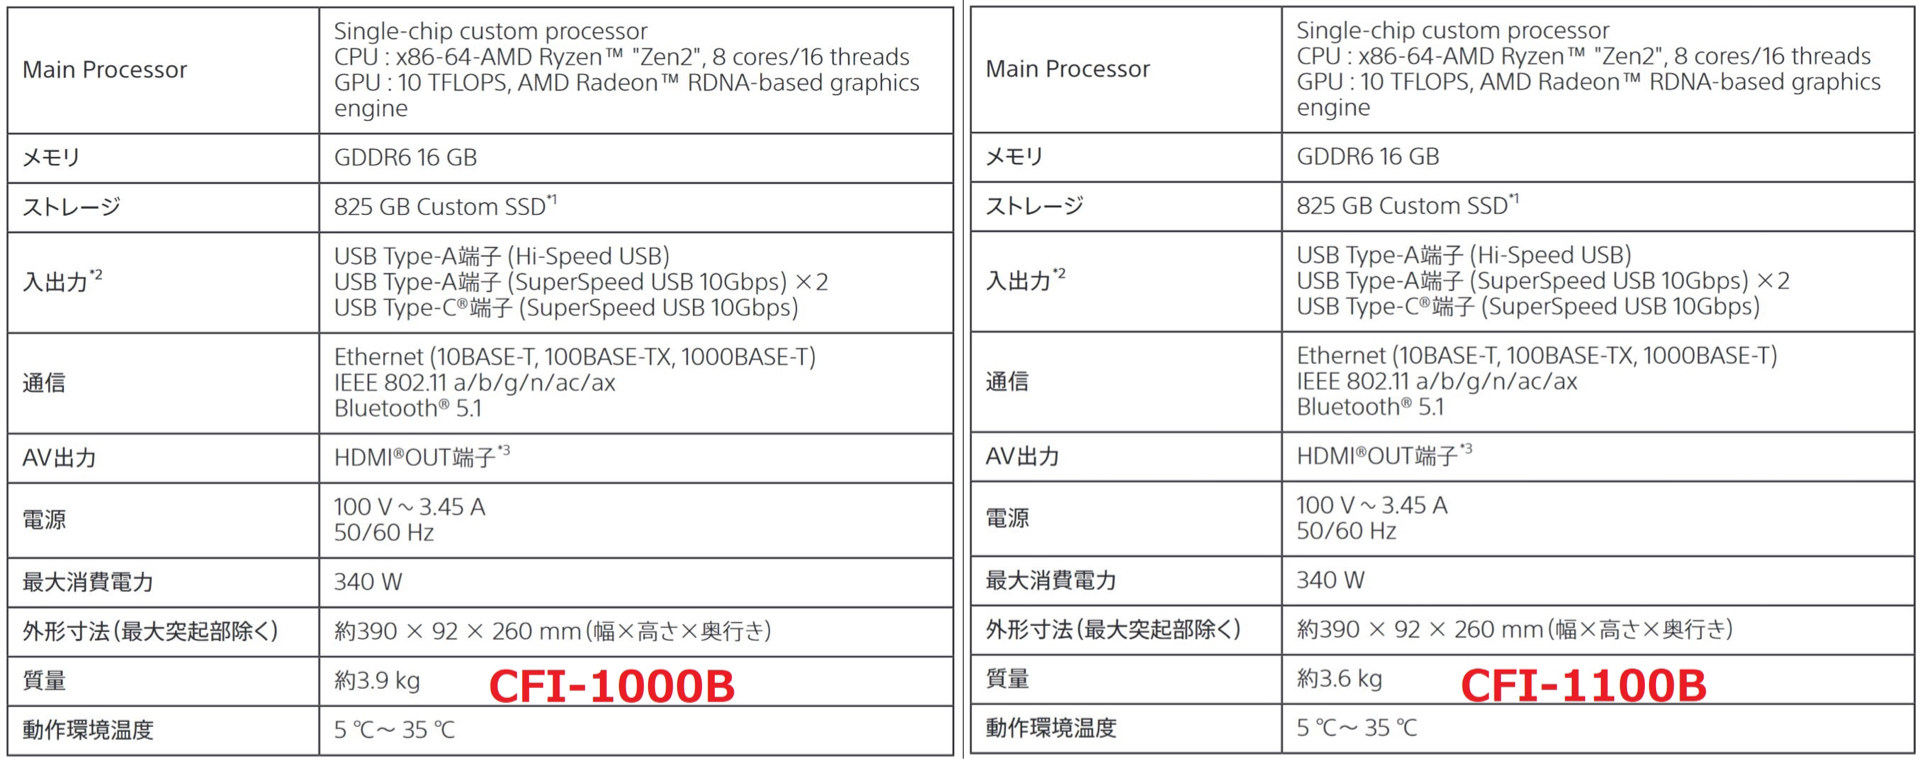 情報】PS5數位版主機(小改版) CFI-1100B 來了@PS5 / PlayStation5 哈啦 